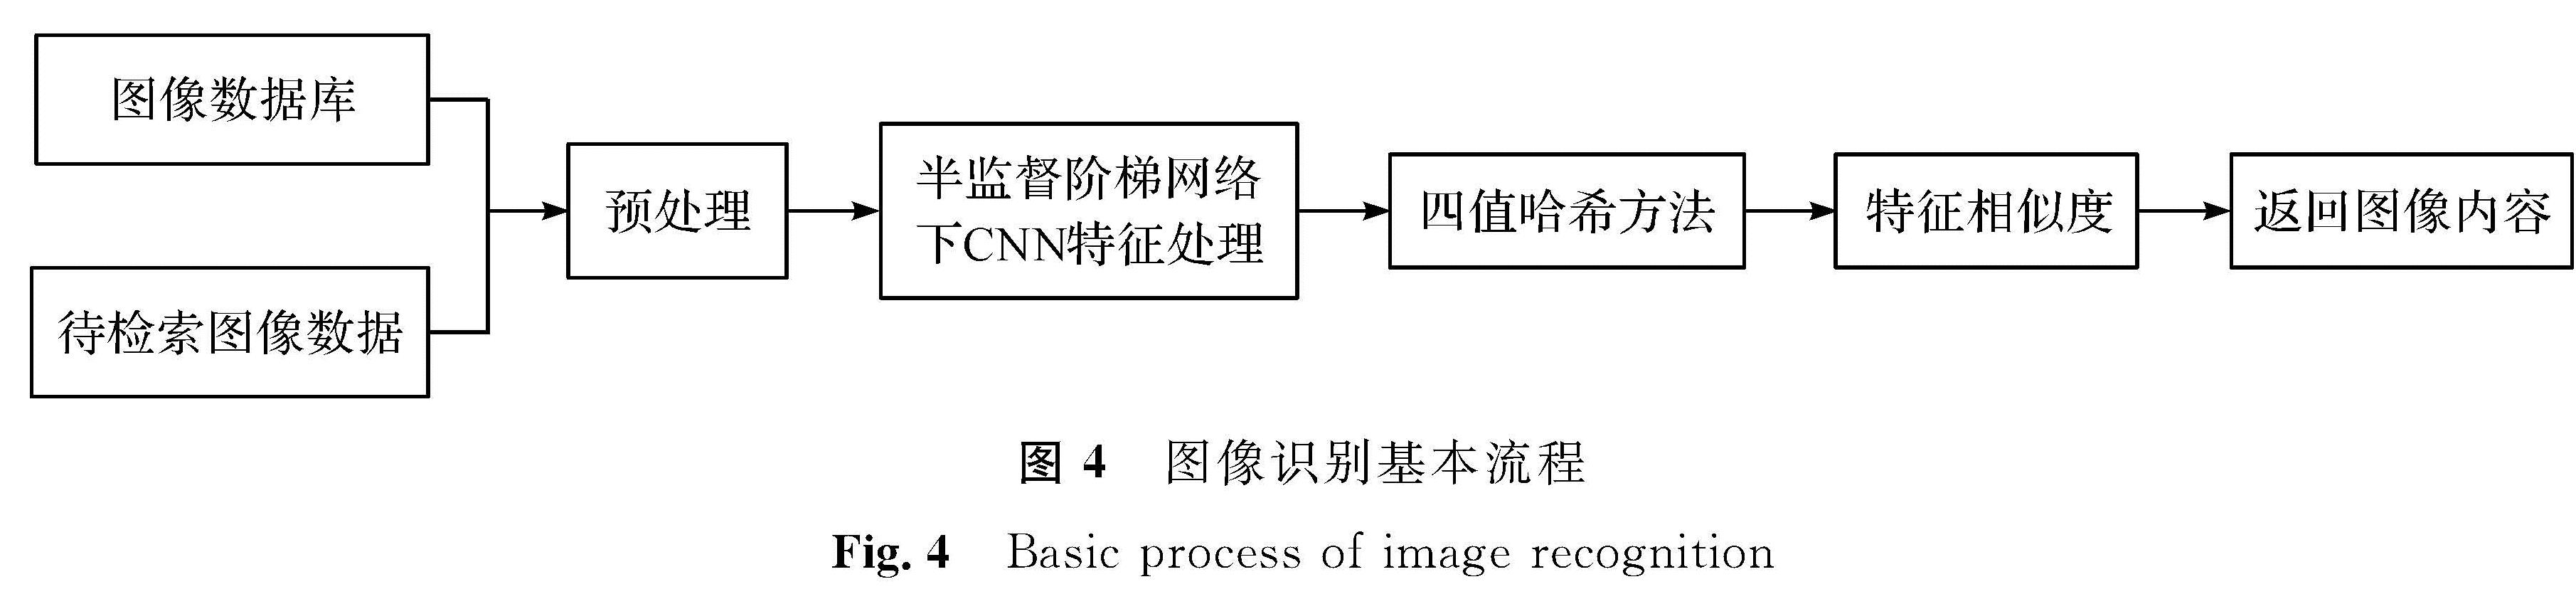 图4 图像识别基本流程<br/>Fig.4 Basic process of image recognition